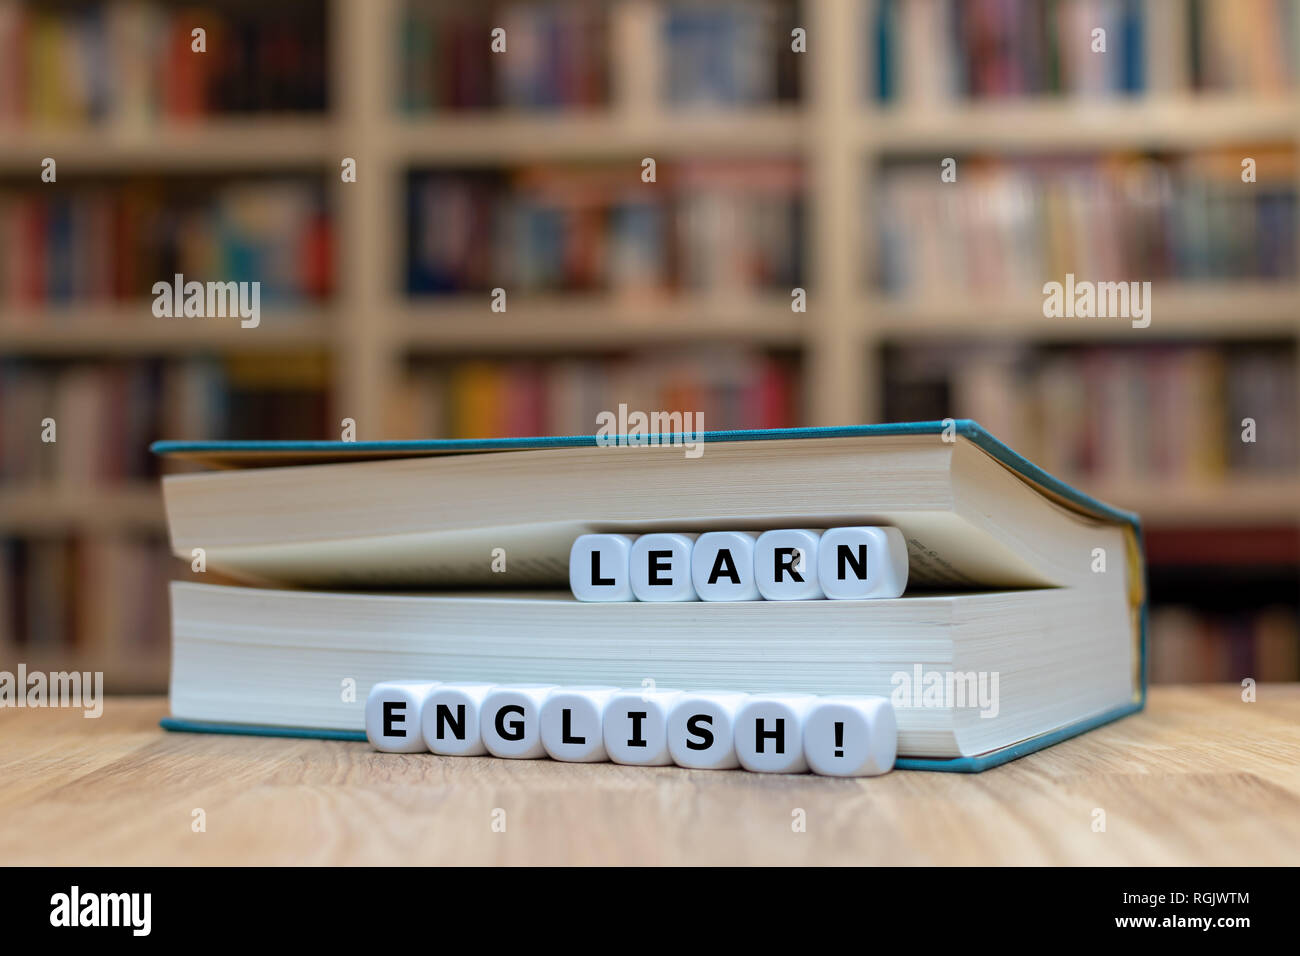 Würfel in ein Buch bilden die Worte "Englisch lernen". Das Buch liegt auf  einem hölzernen Schreibtisch vor einem Bücherregal Stockfotografie - Alamy